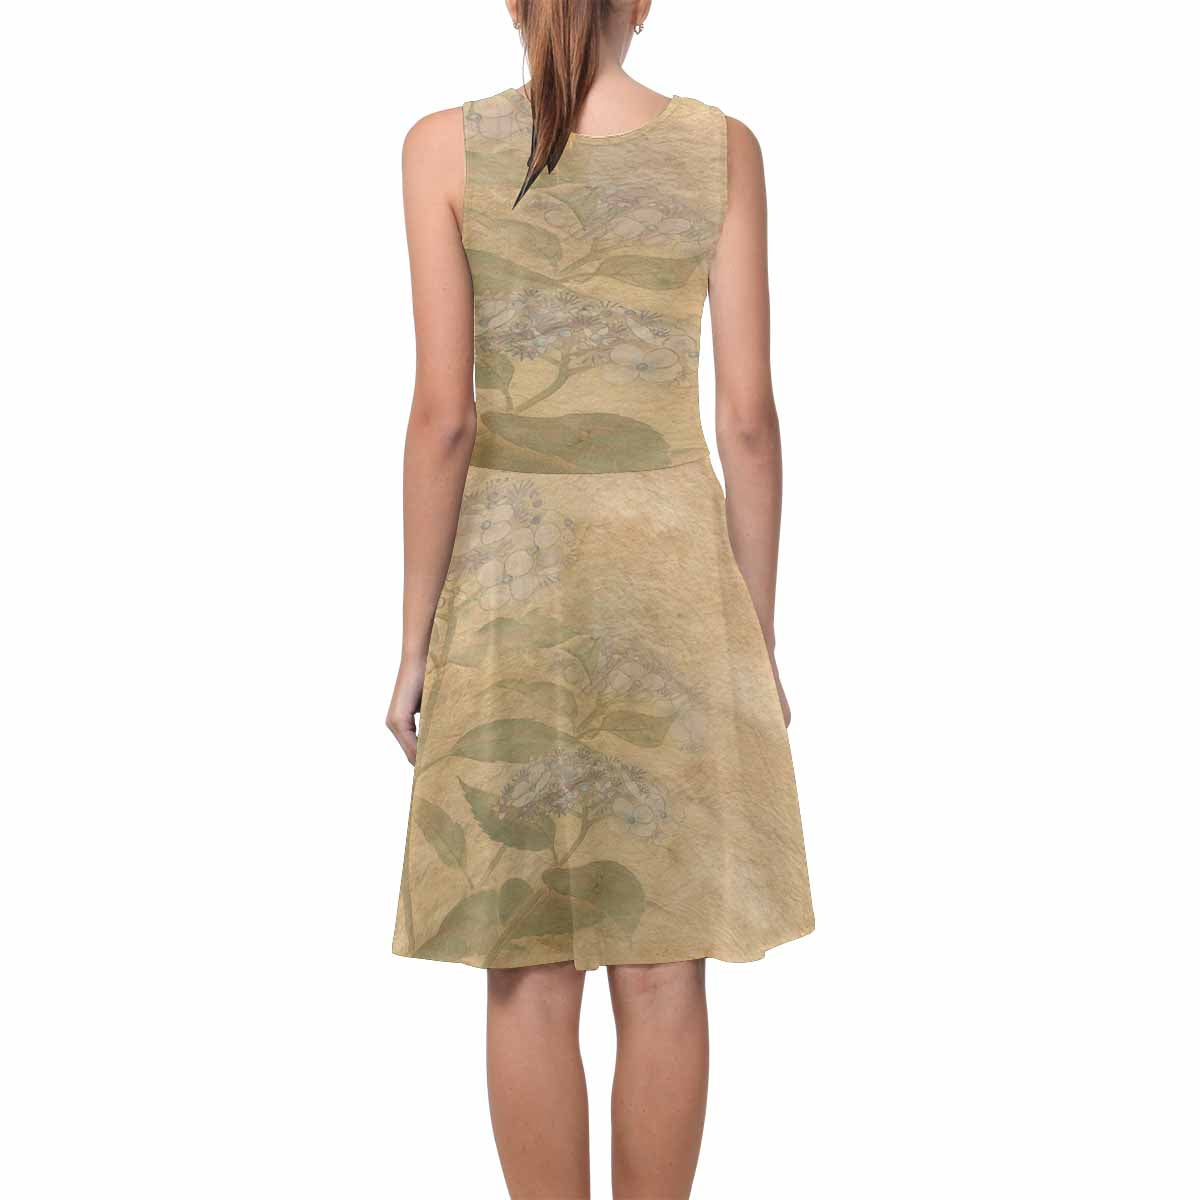 Antique General summer dress, MODEL 09534, design 28